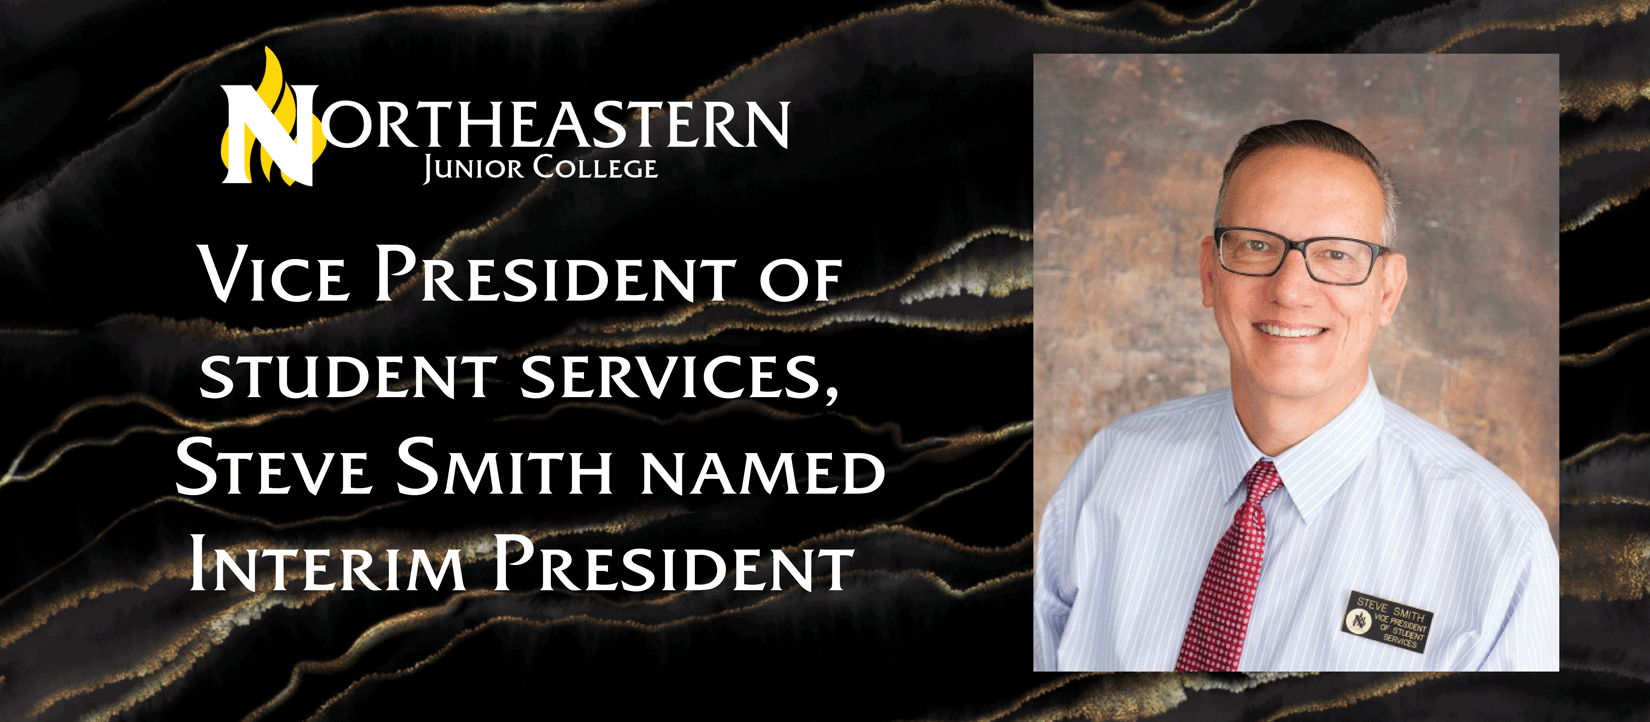 Steve Smith named Interim President